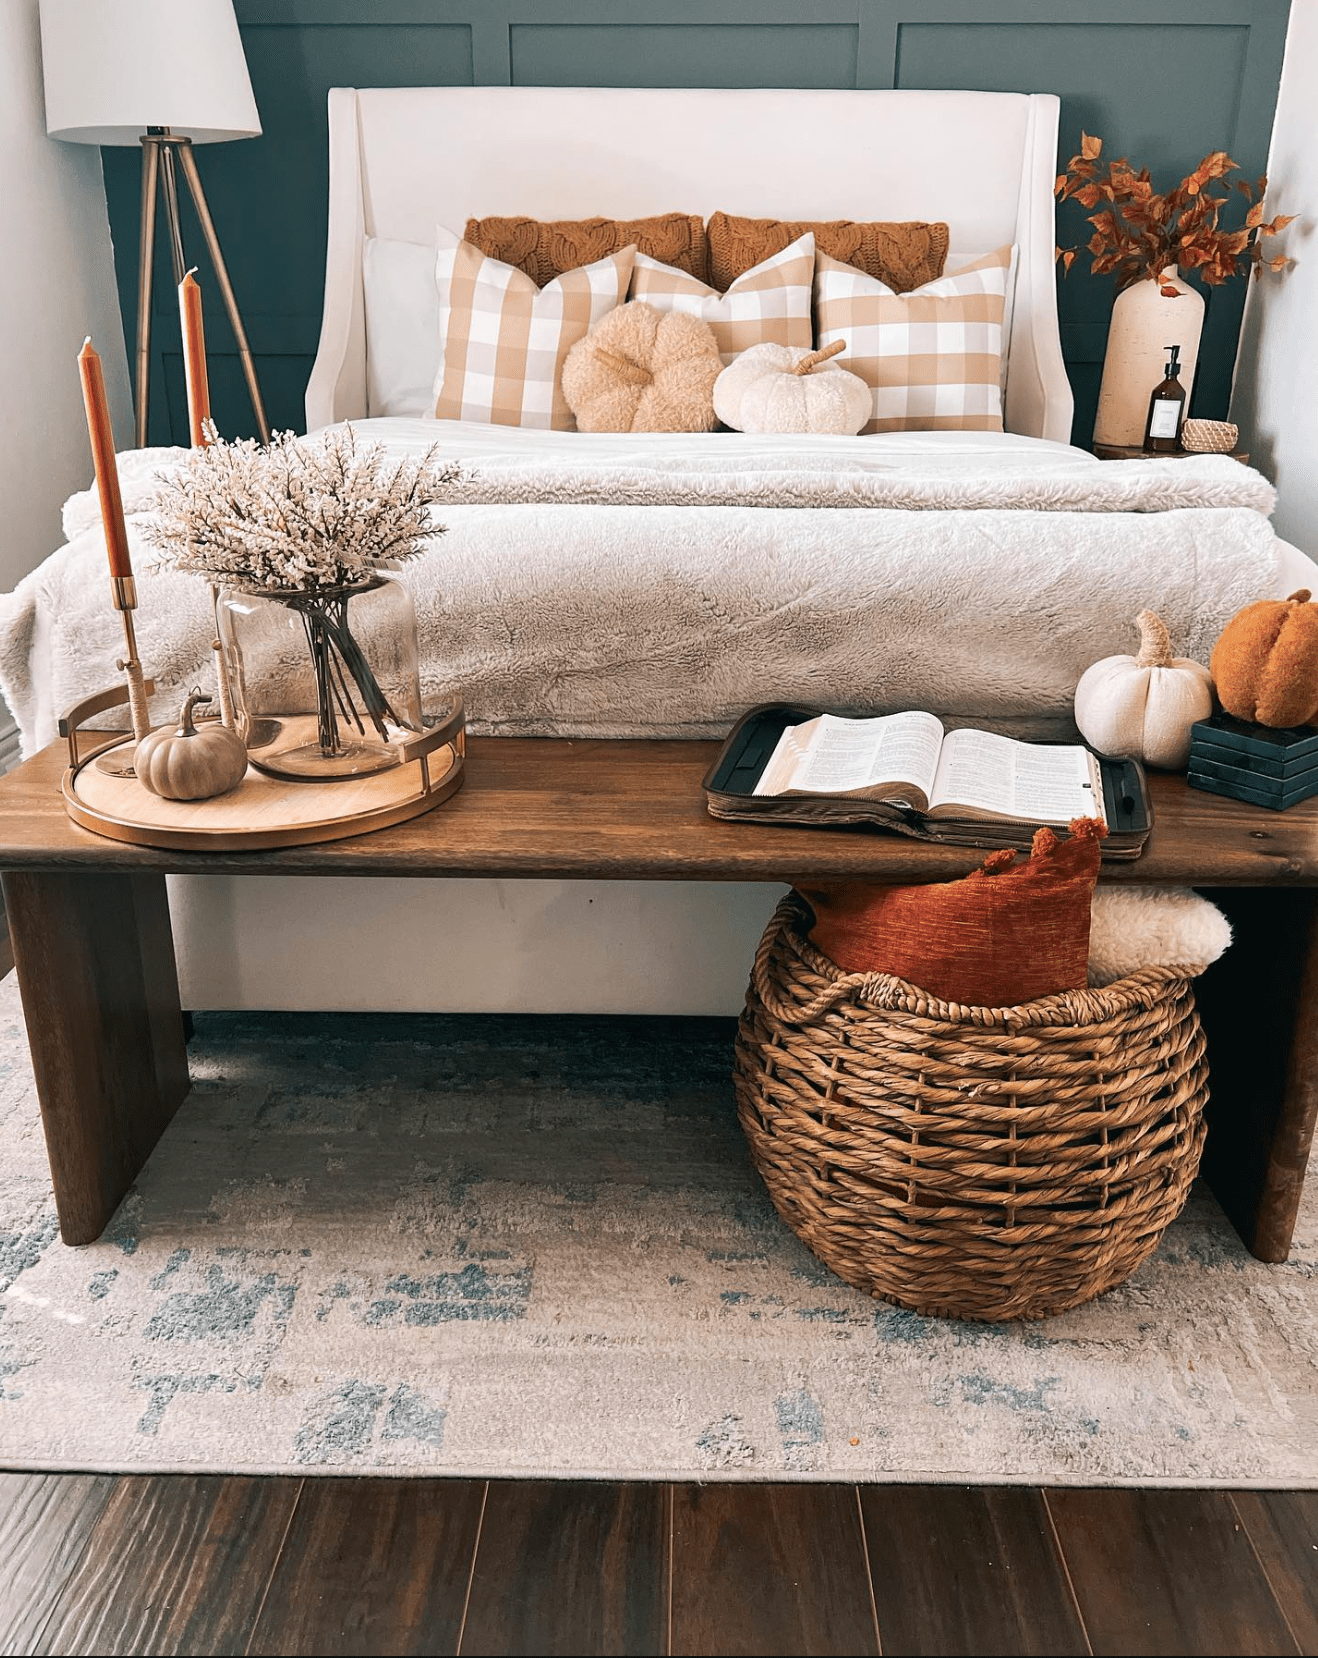 banco de cama com decoração de outono